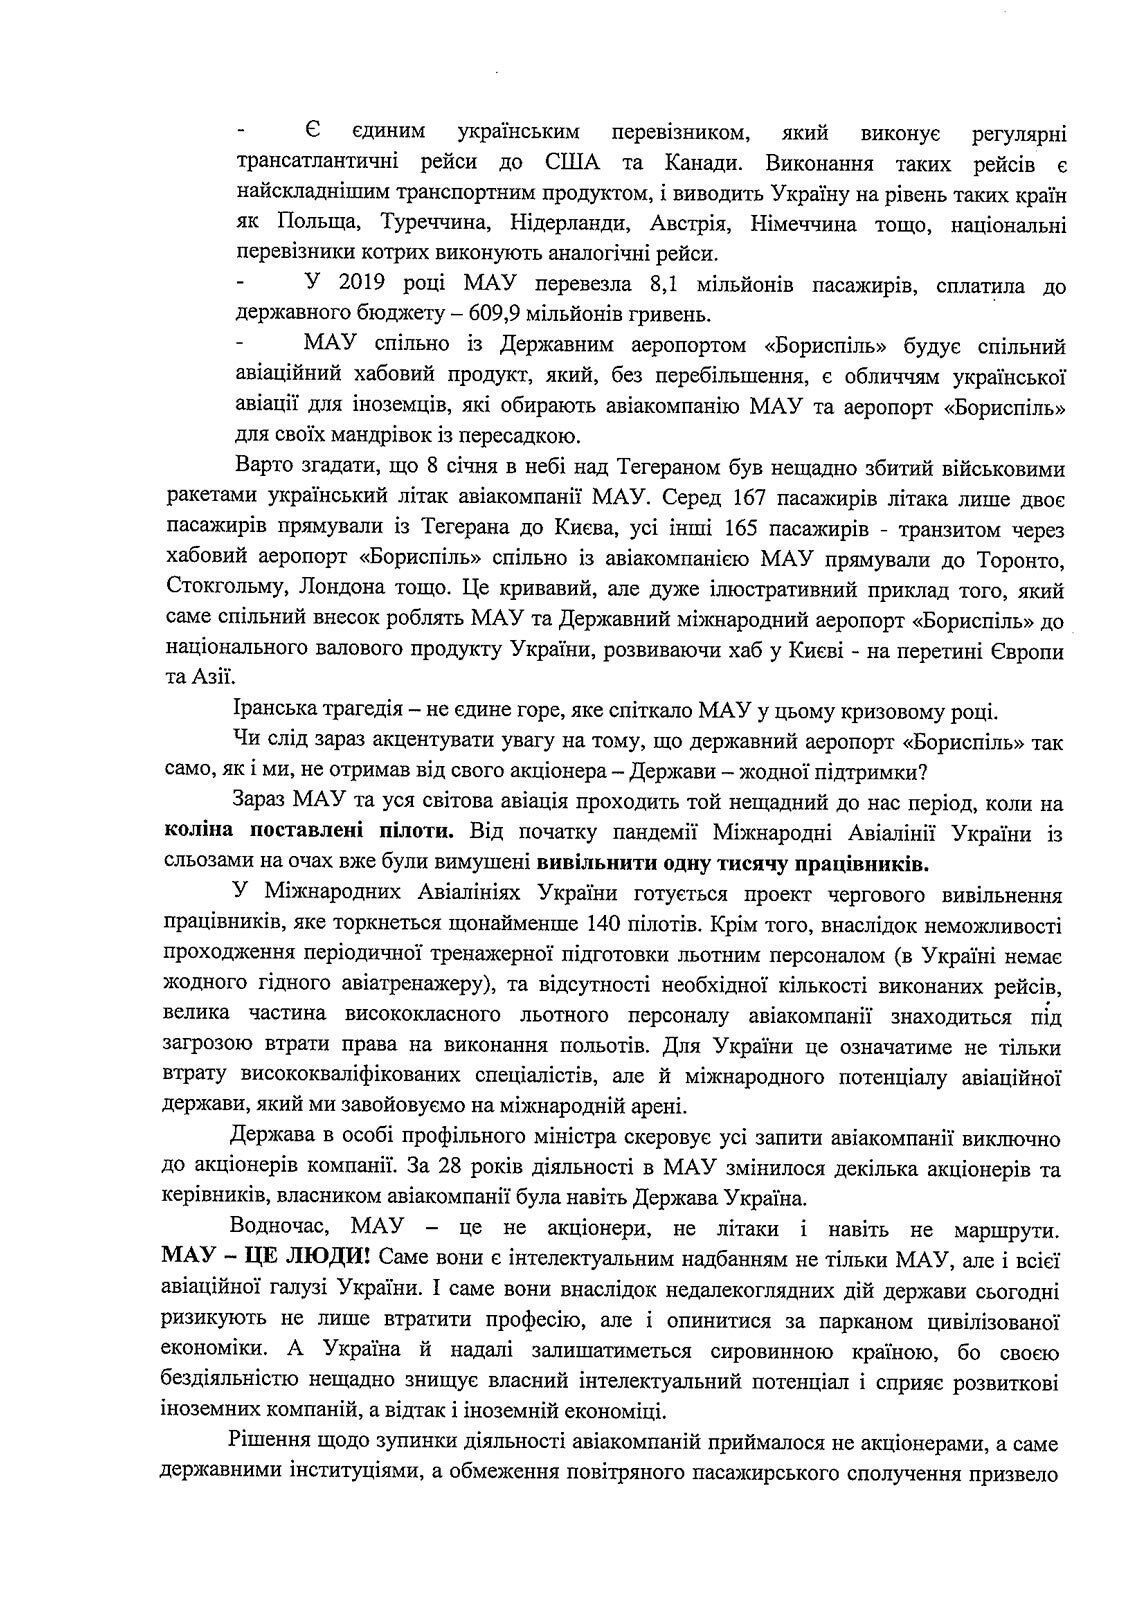 Лист від керівництва МАУ до Володимира Зеленського